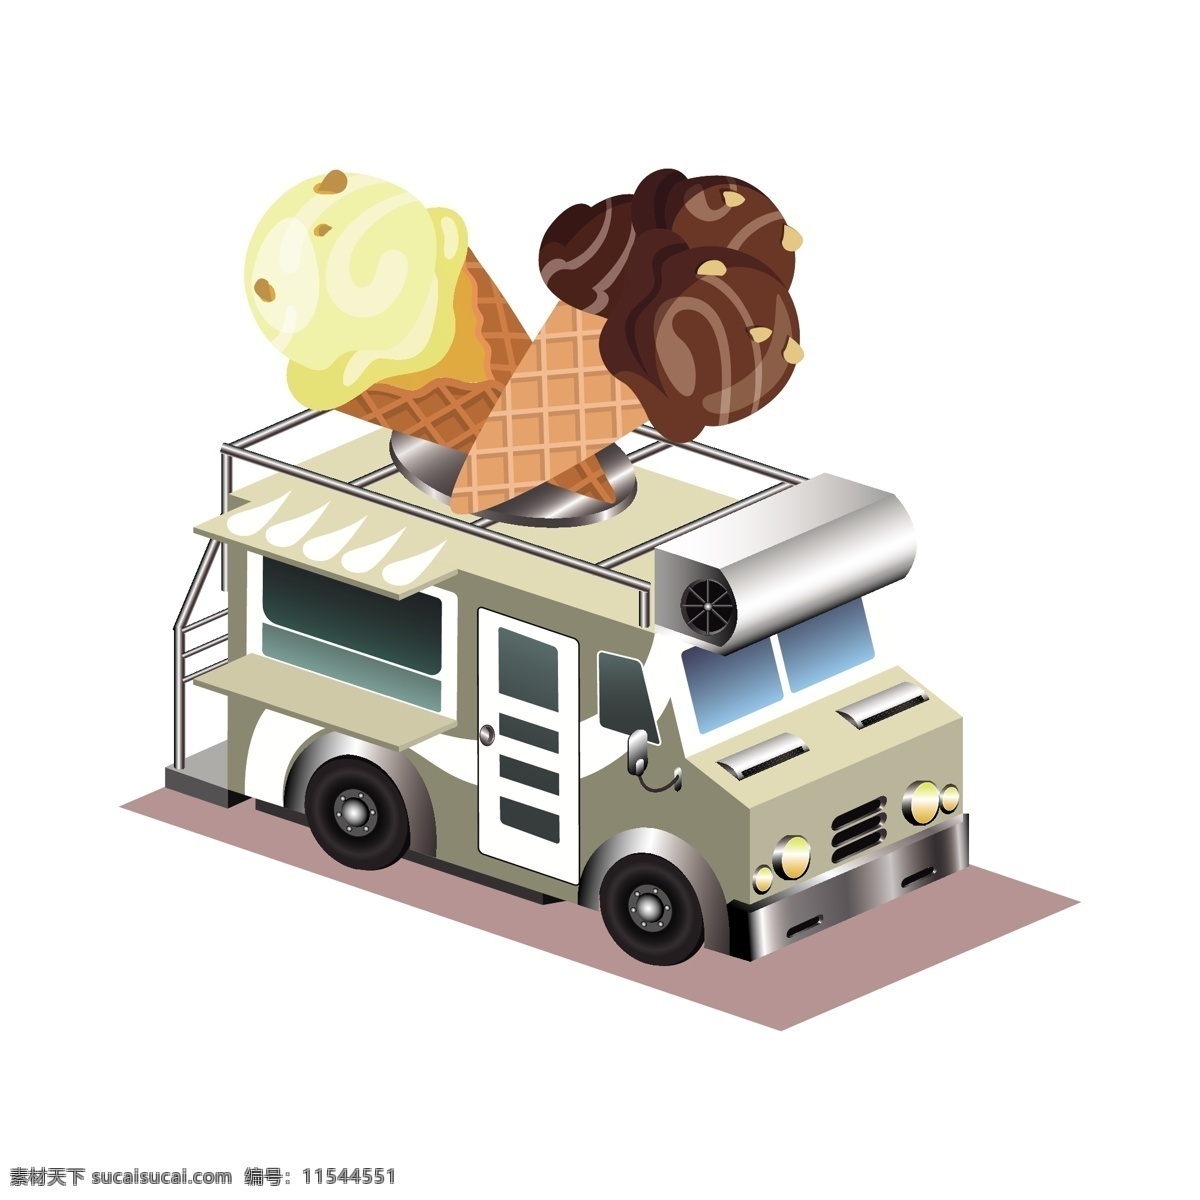 卡通 冰淇淋 球 快餐 车 矢量 卡通冰淇淋 卡通的冰淇淋 冰淇淋快餐车 快餐车 卡通的快餐车